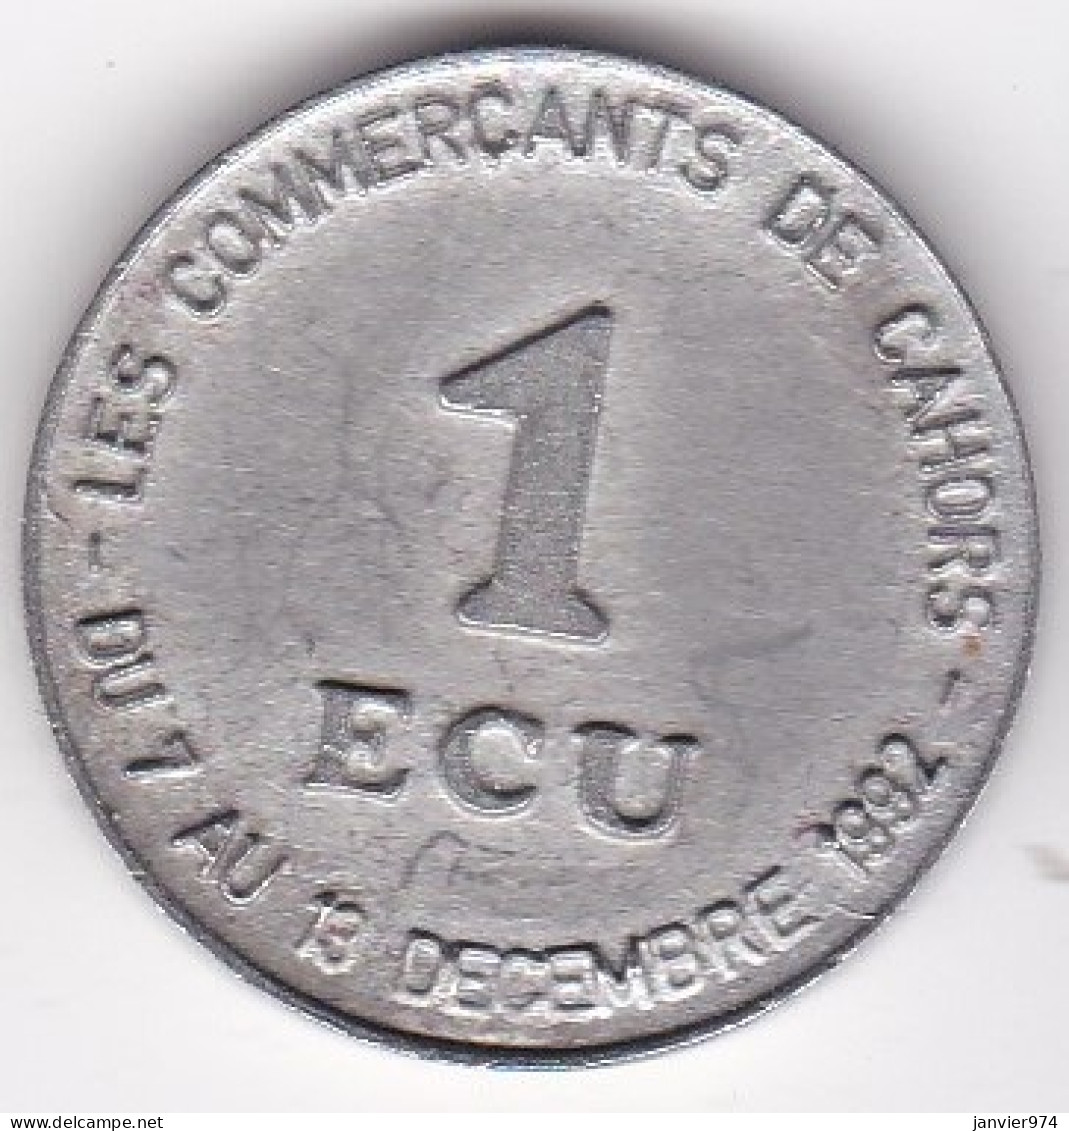 Cahors . 1 Ecu 1992 , Les Commerçants De Cahors . La Semaine De L’Européenne De L’Ecu, En Etain - Euros Des Villes